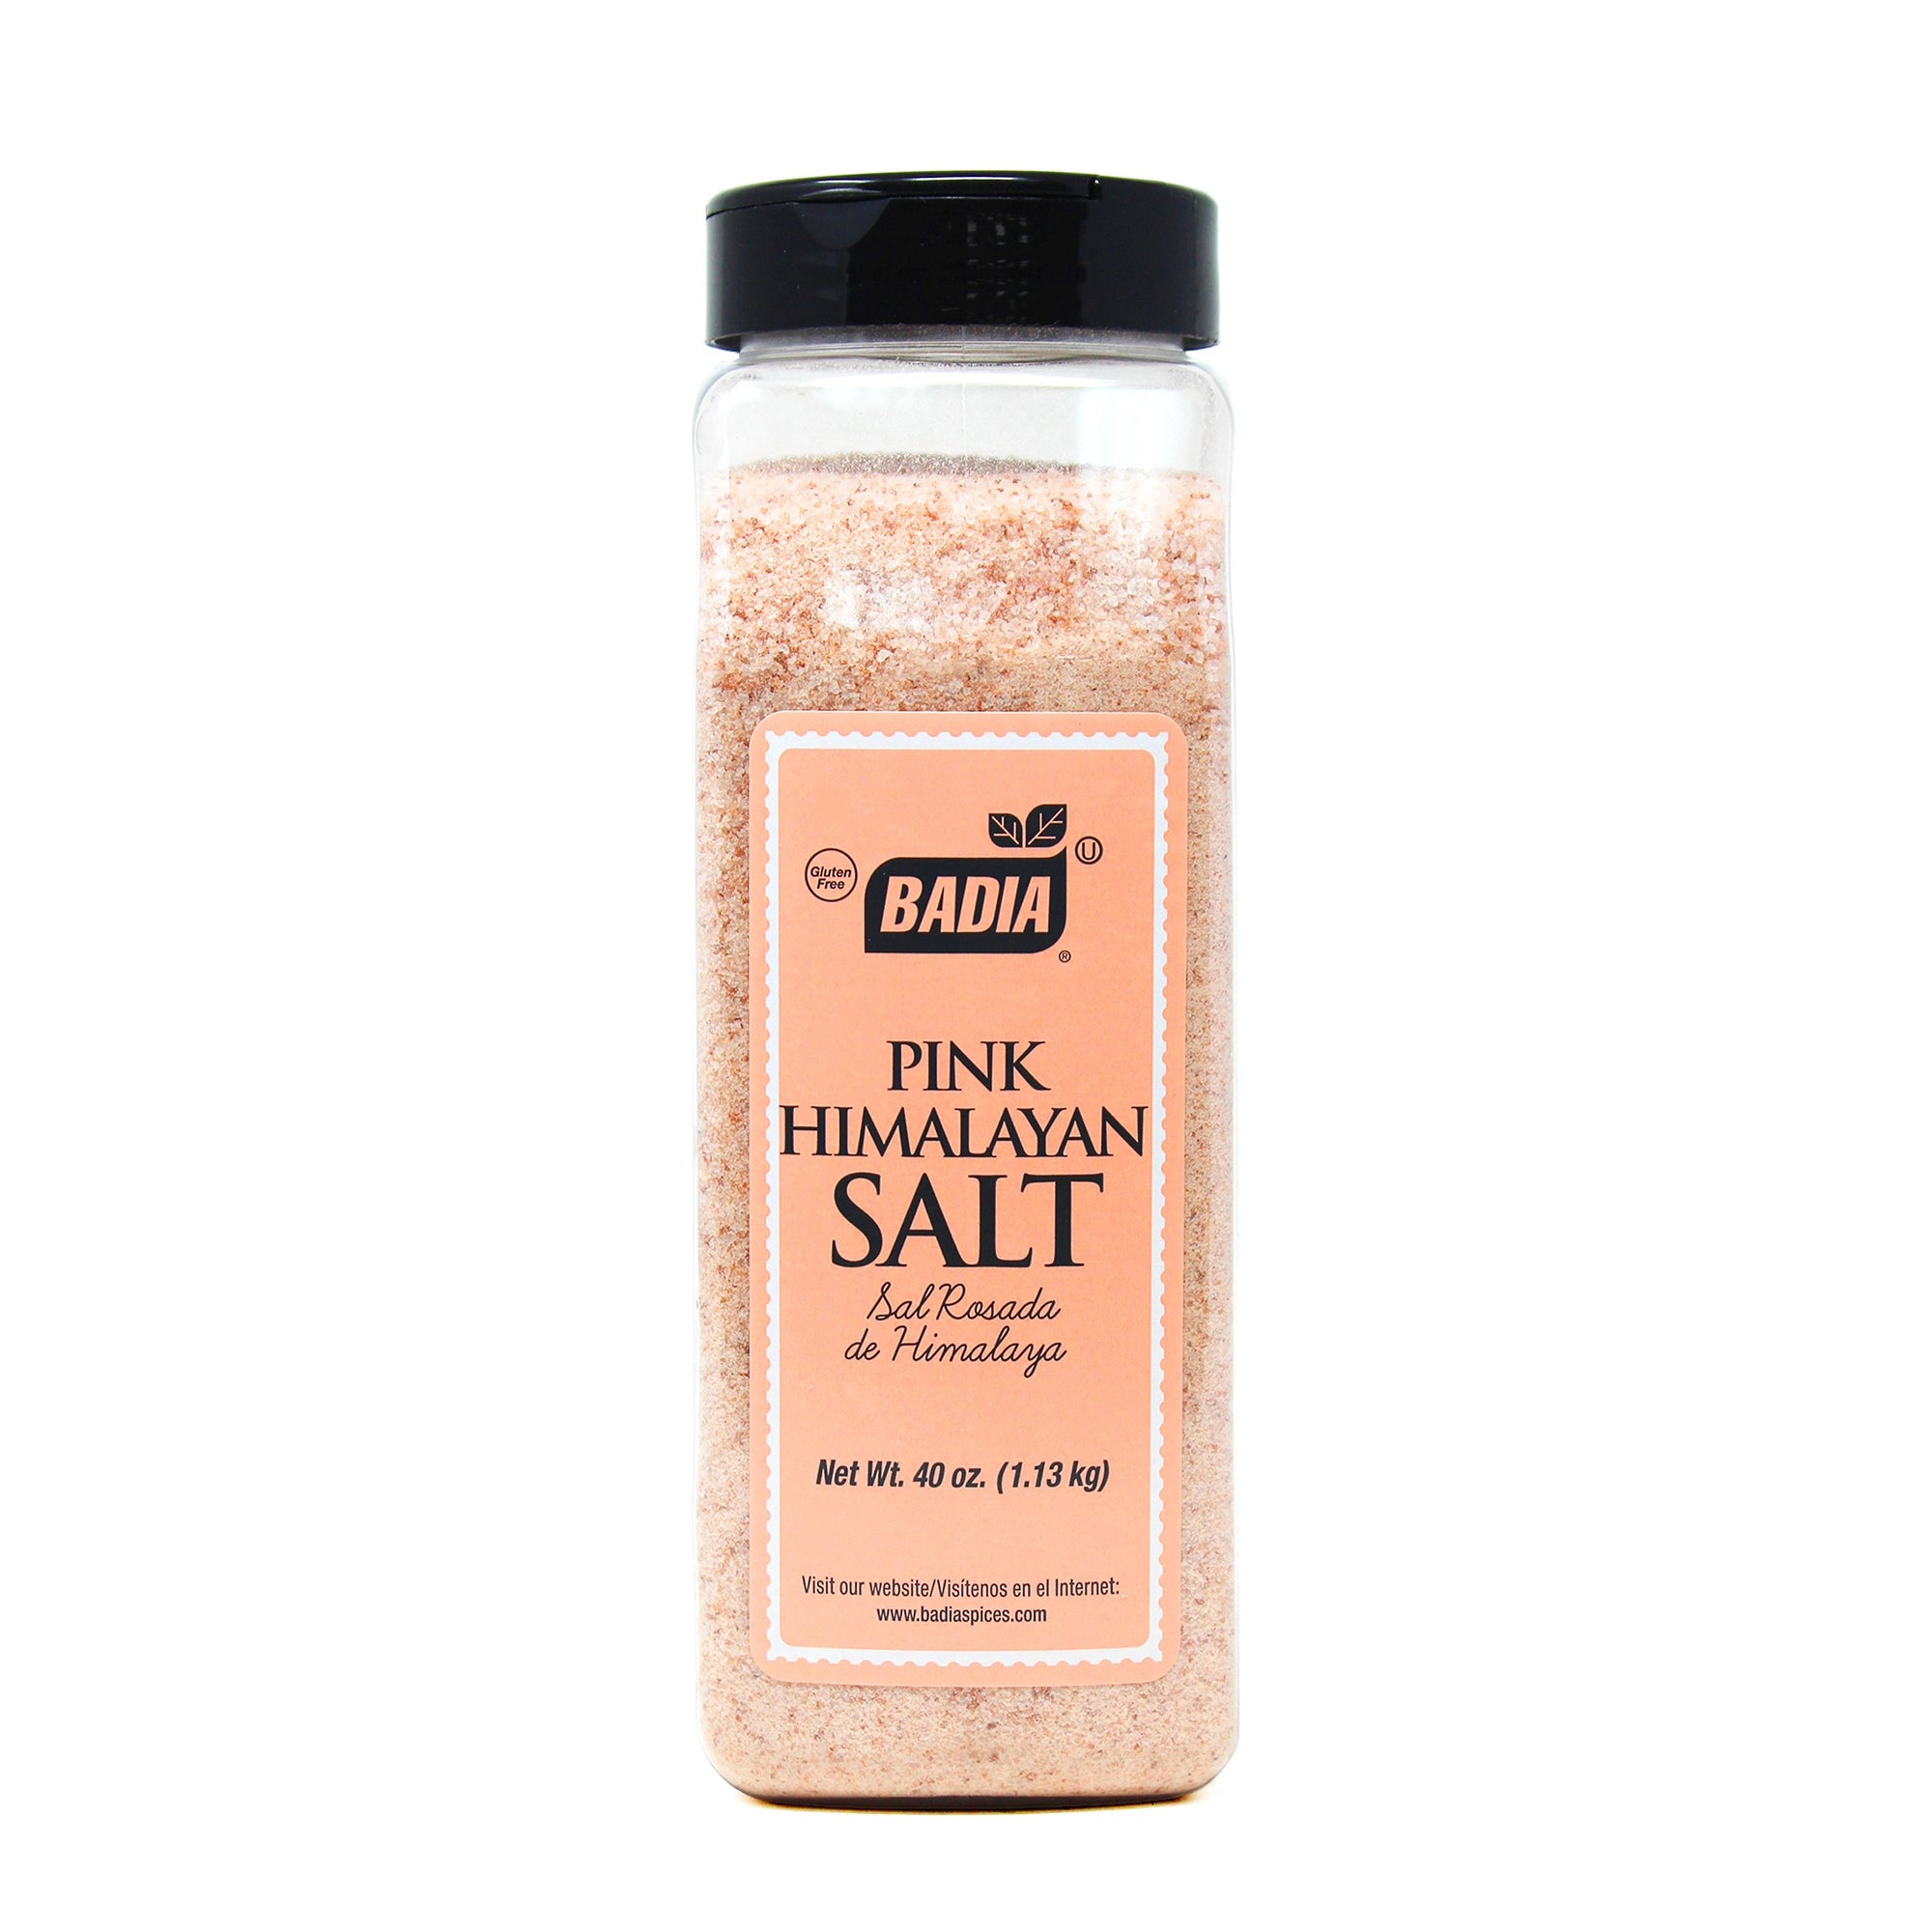 Pink Himalayan Salt 1.13 kg / 40 oz